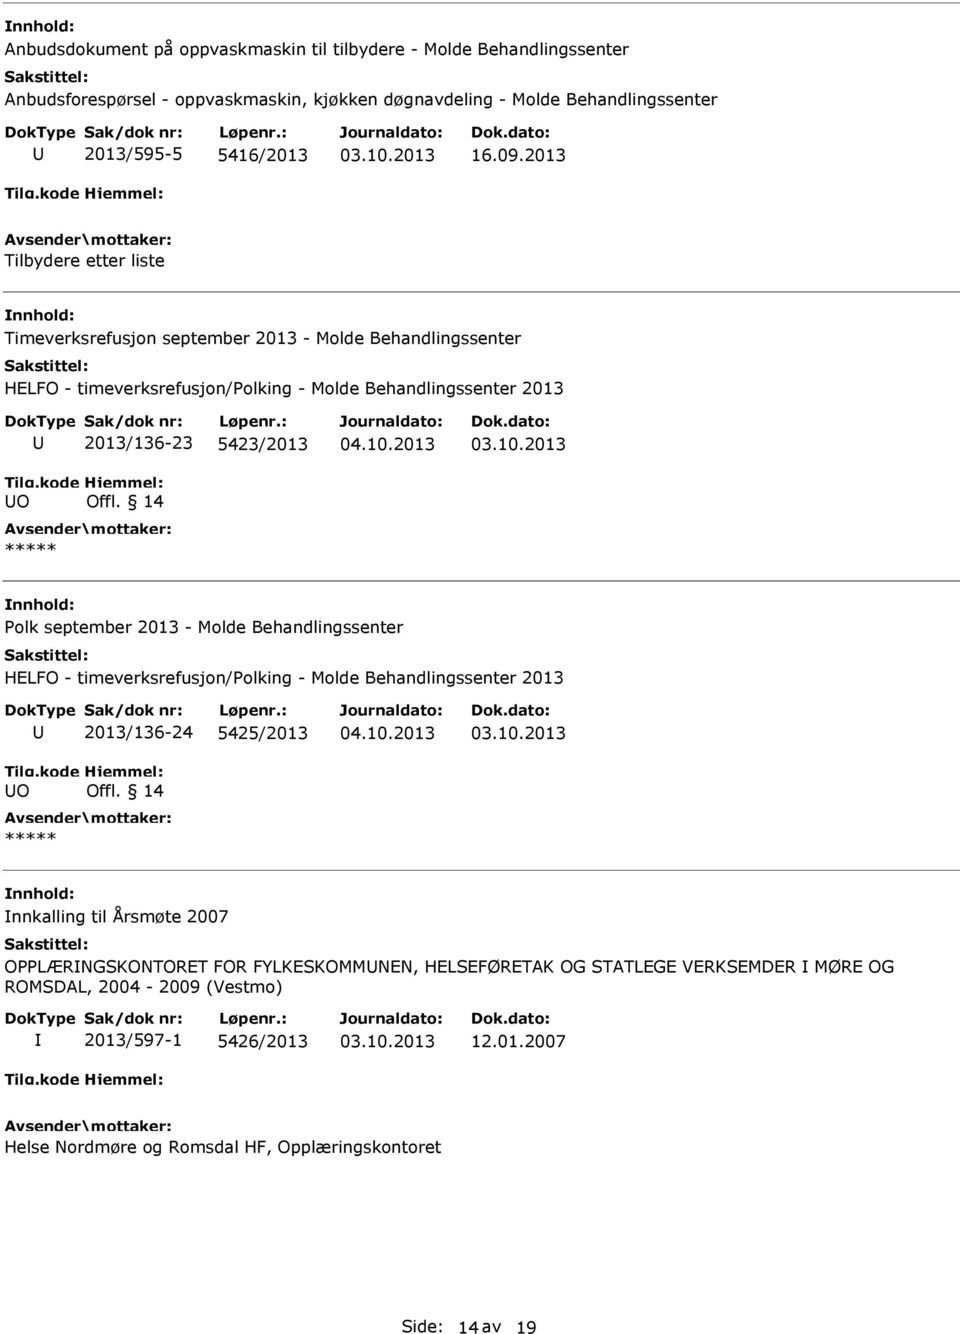 14 olk september 2013 - Molde Behandlingssenter HELFO - timeverksrefusjon/olking - Molde Behandlingssenter 2013 O 2013/136-24 5425/2013 Offl.